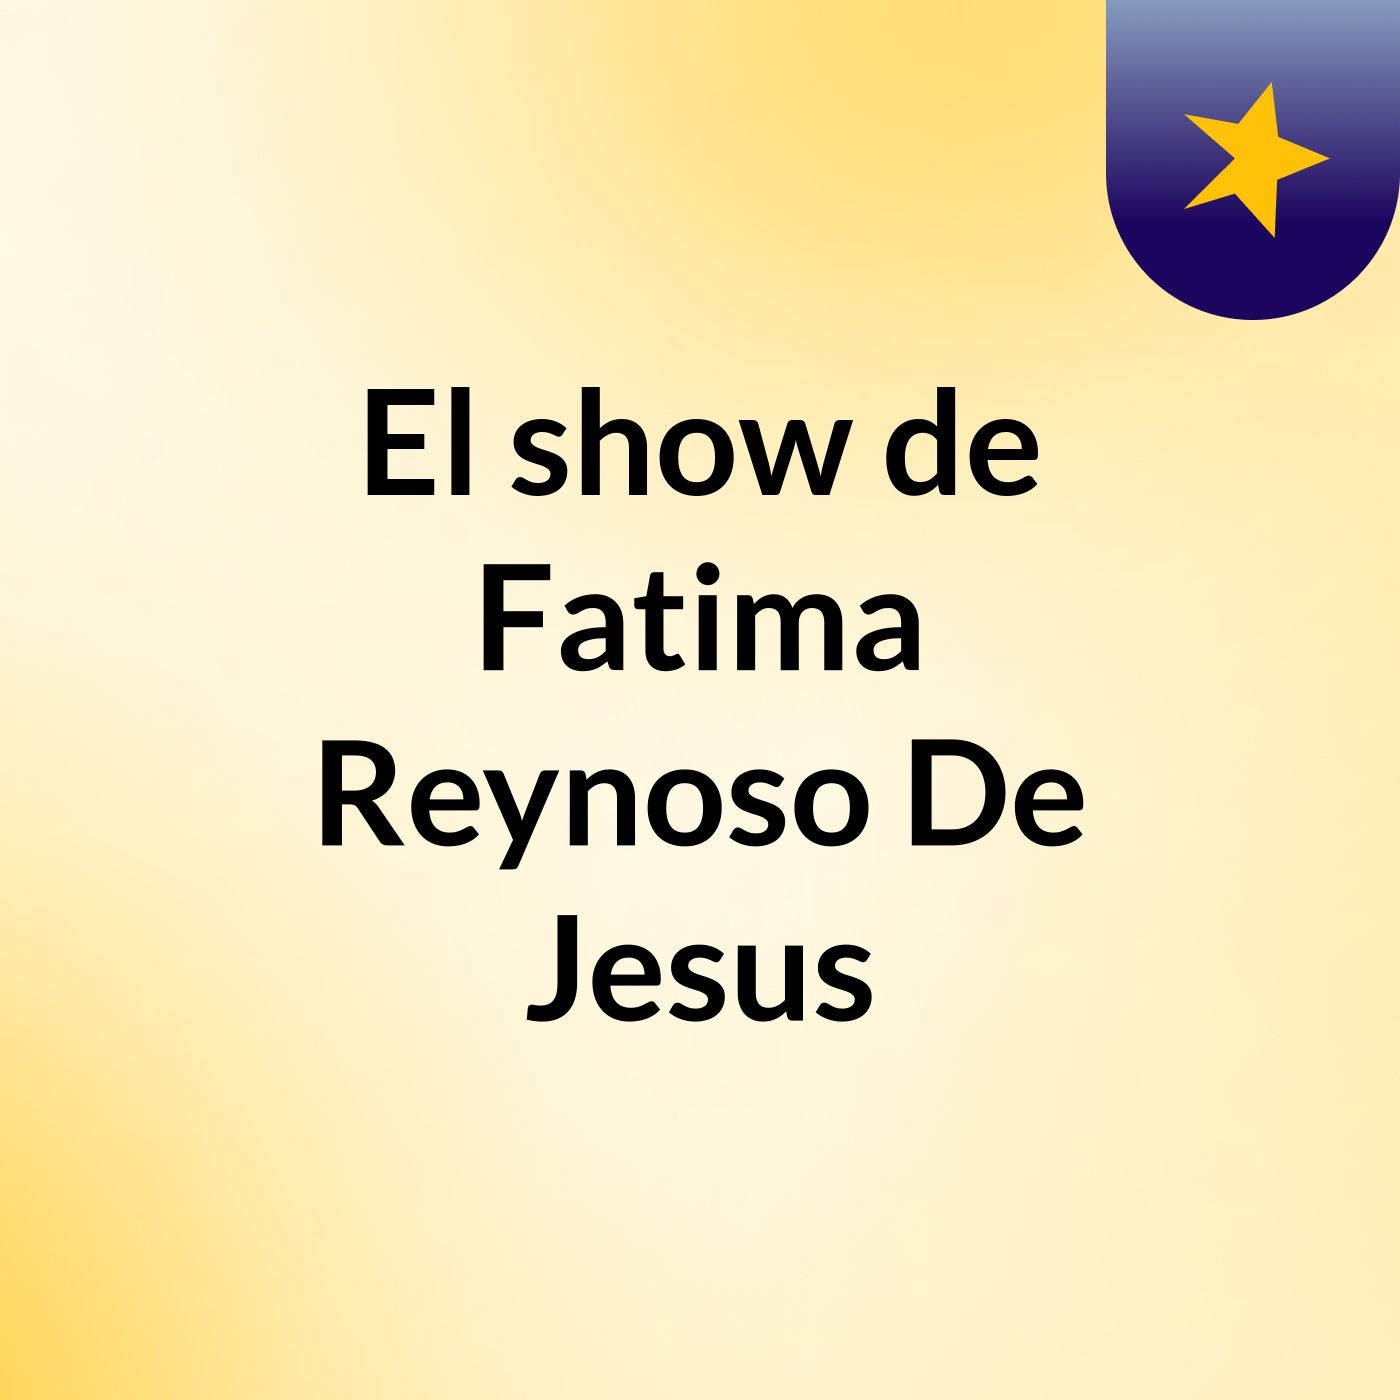 El show de Fatima Reynoso De Jesus